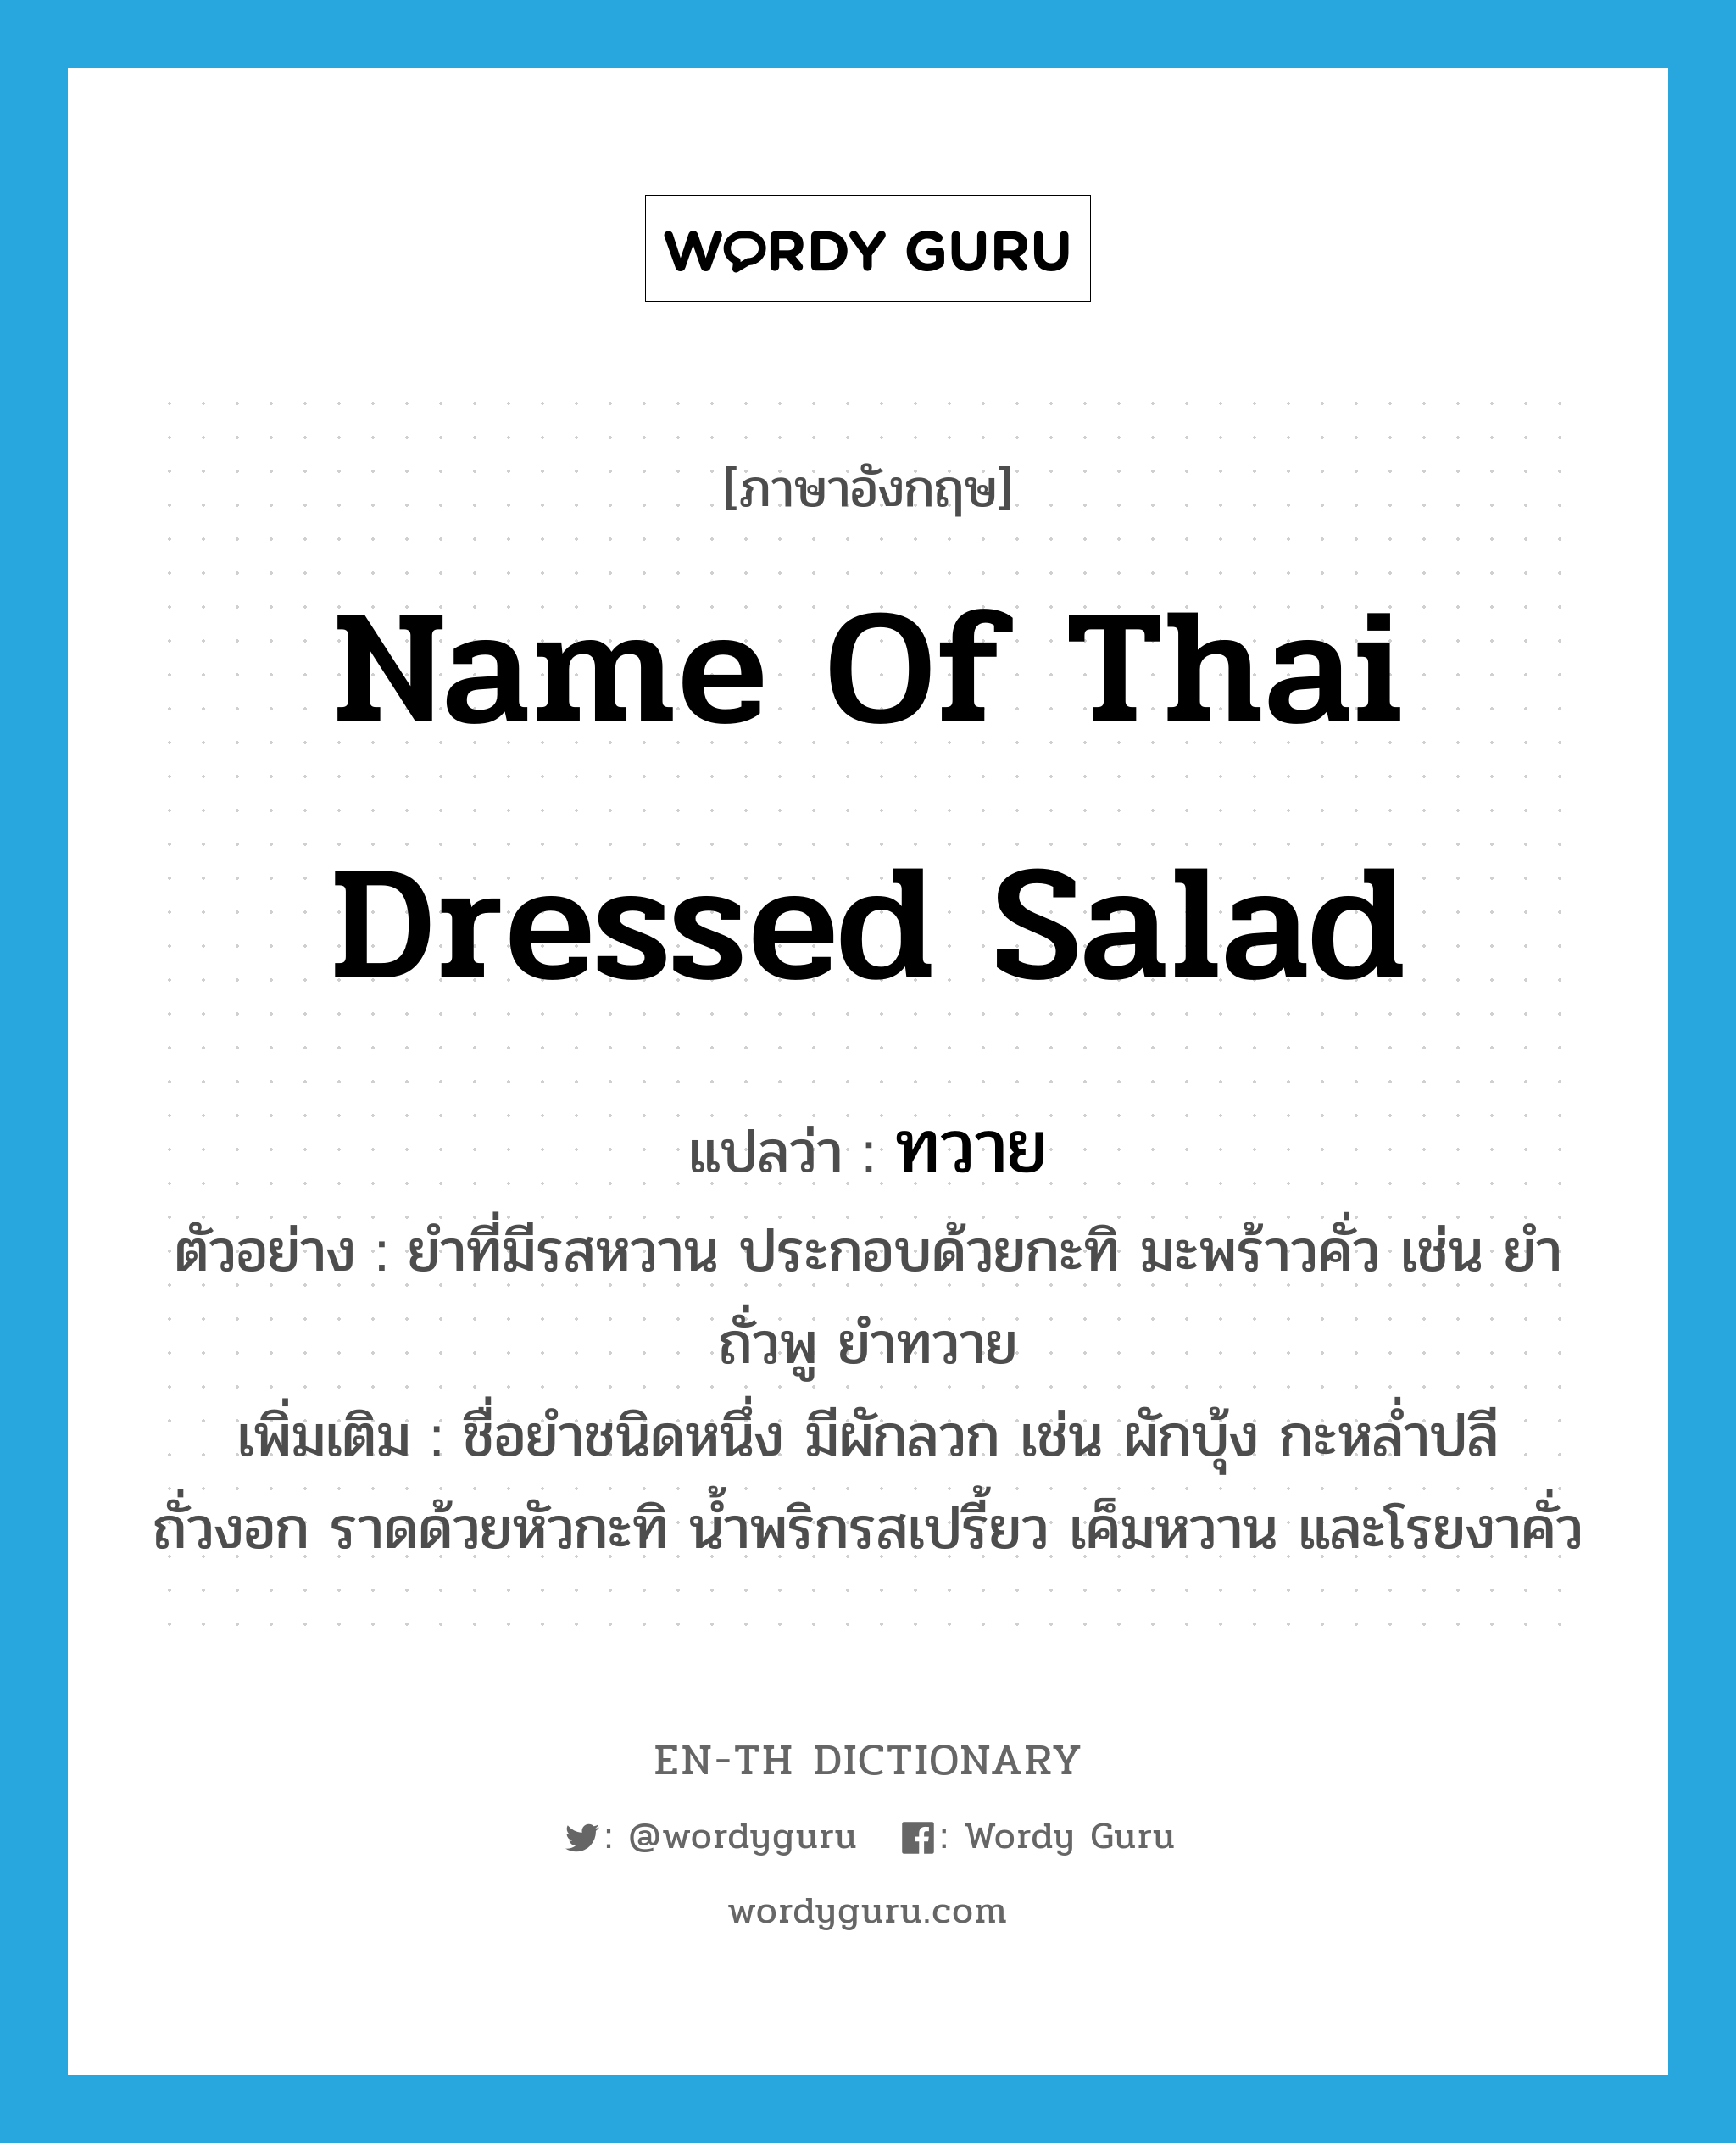 ทวาย ภาษาอังกฤษ?, คำศัพท์ภาษาอังกฤษ ทวาย แปลว่า name of Thai dressed salad ประเภท N ตัวอย่าง ยำที่มีรสหวาน ประกอบด้วยกะทิ มะพร้าวคั่ว เช่น ยำถั่วพู ยำทวาย เพิ่มเติม ชื่อยำชนิดหนึ่ง มีผักลวก เช่น ผักบุ้ง กะหล่ำปลี ถั่วงอก ราดด้วยหัวกะทิ น้ำพริกรสเปรี้ยว เค็มหวาน และโรยงาคั่ว หมวด N